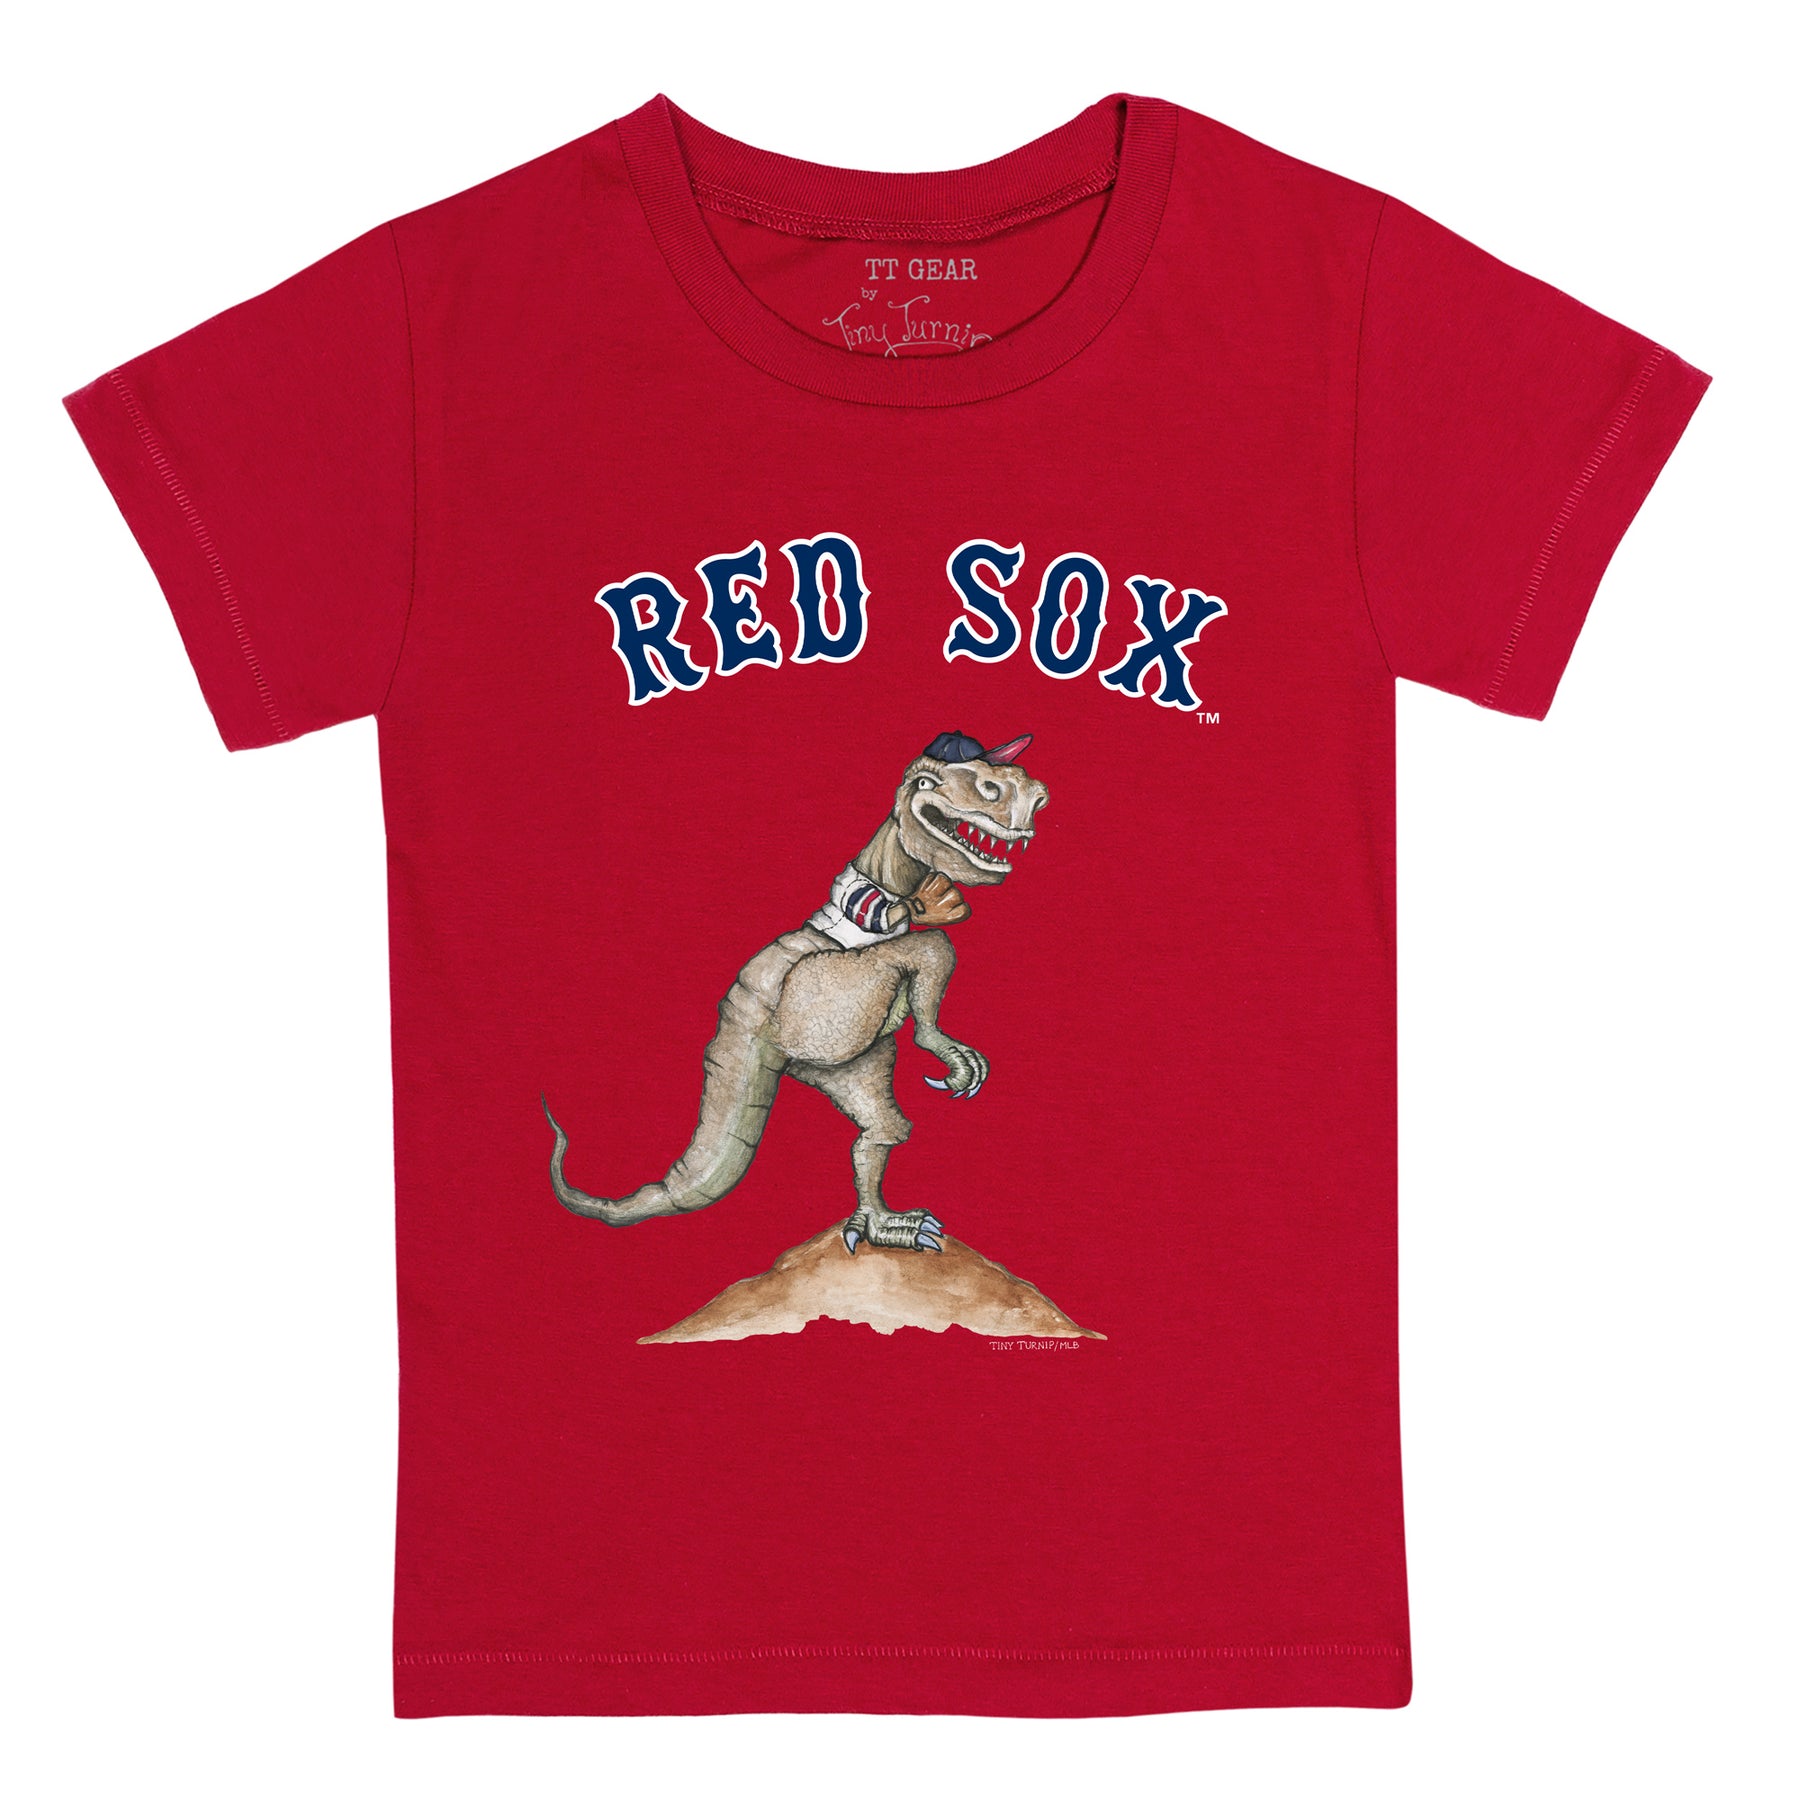 Boston Red Sox MLB Logo Select Navy T-Shirt